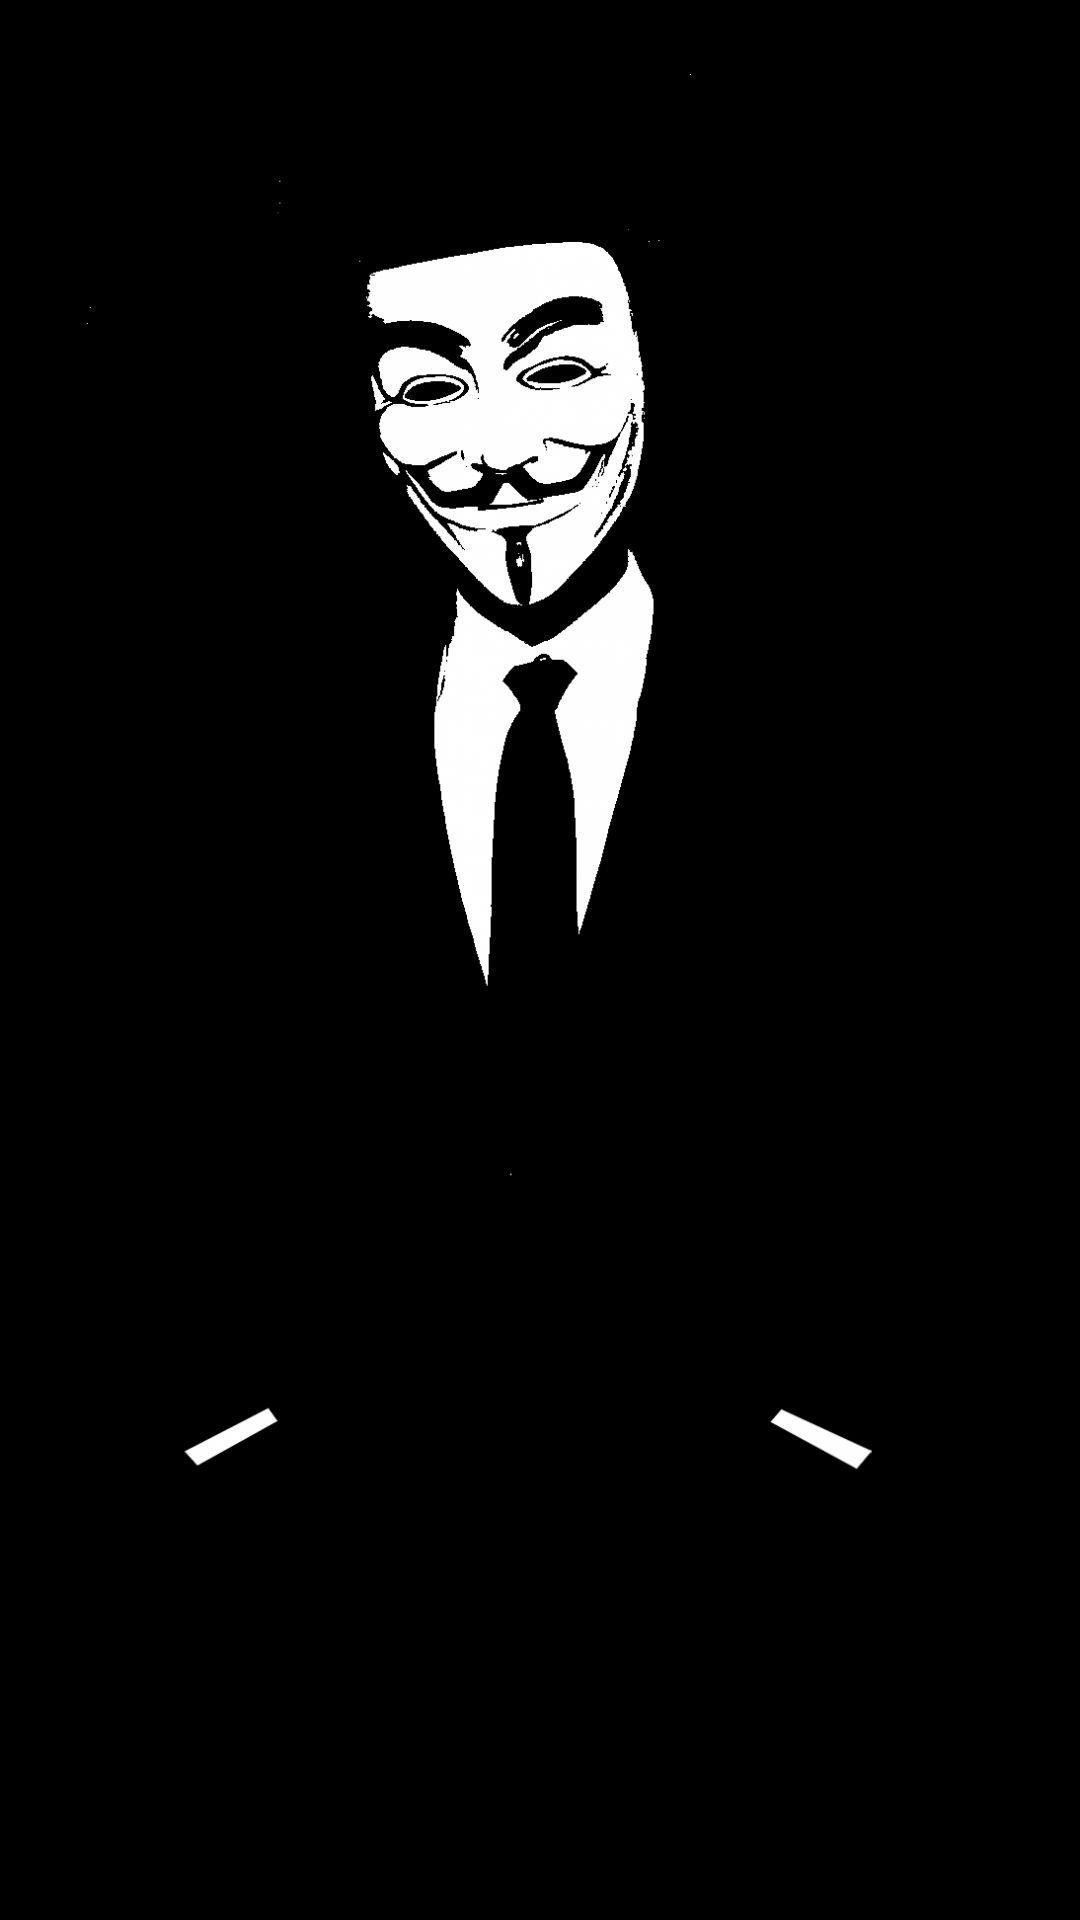 Anonimous13